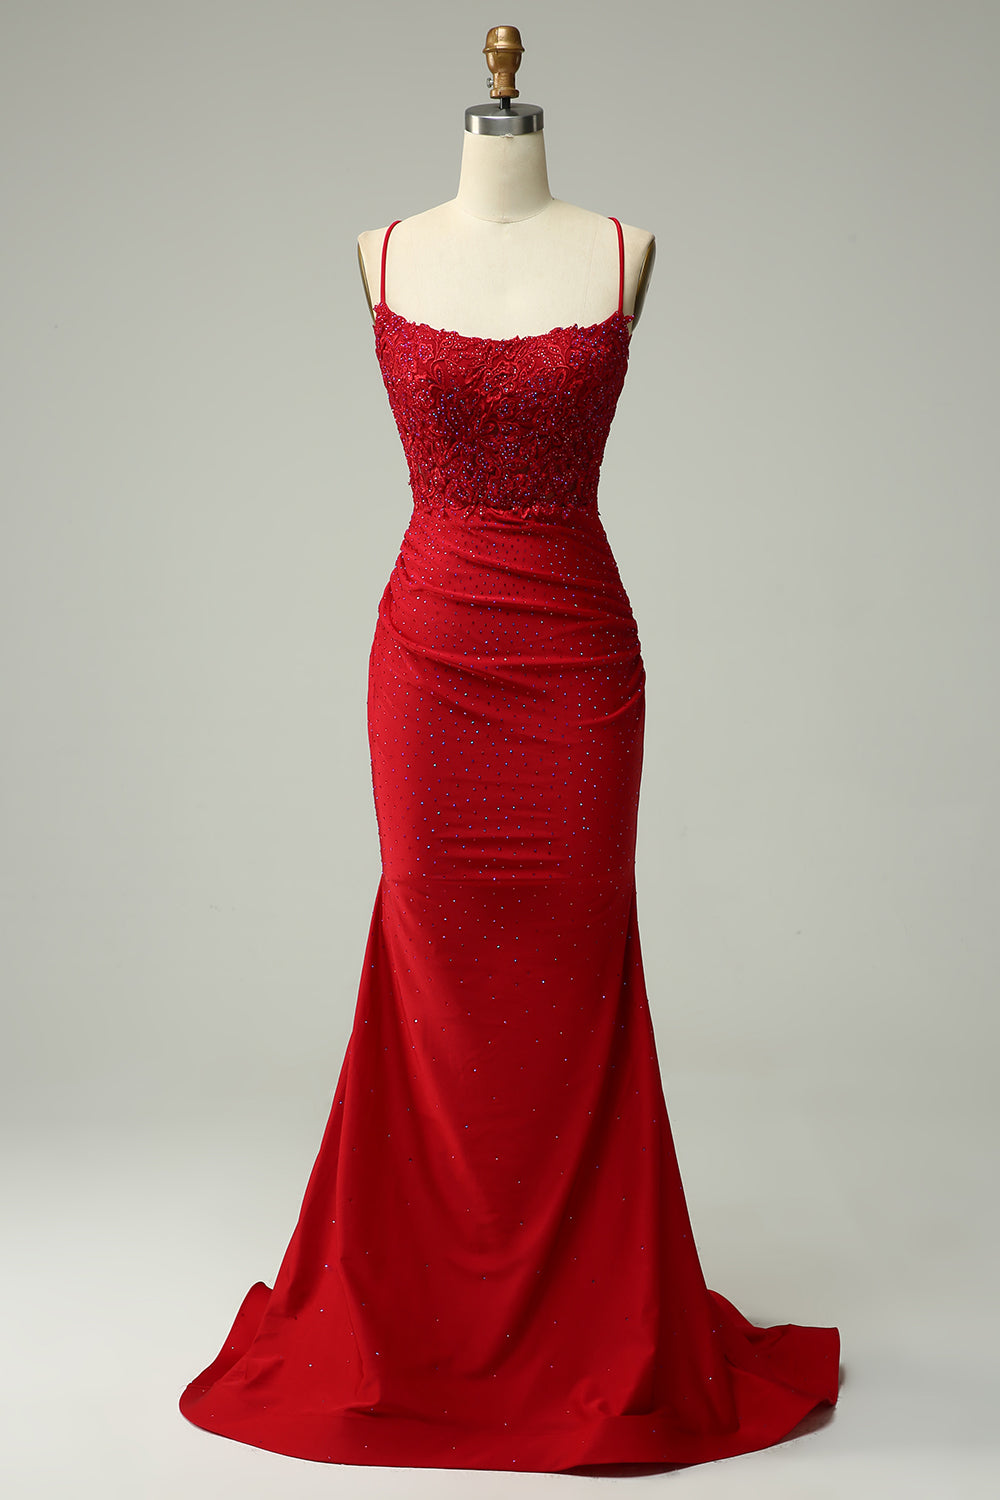 Voluminous Tulle Dress - Dark red - Ladies | H&M US